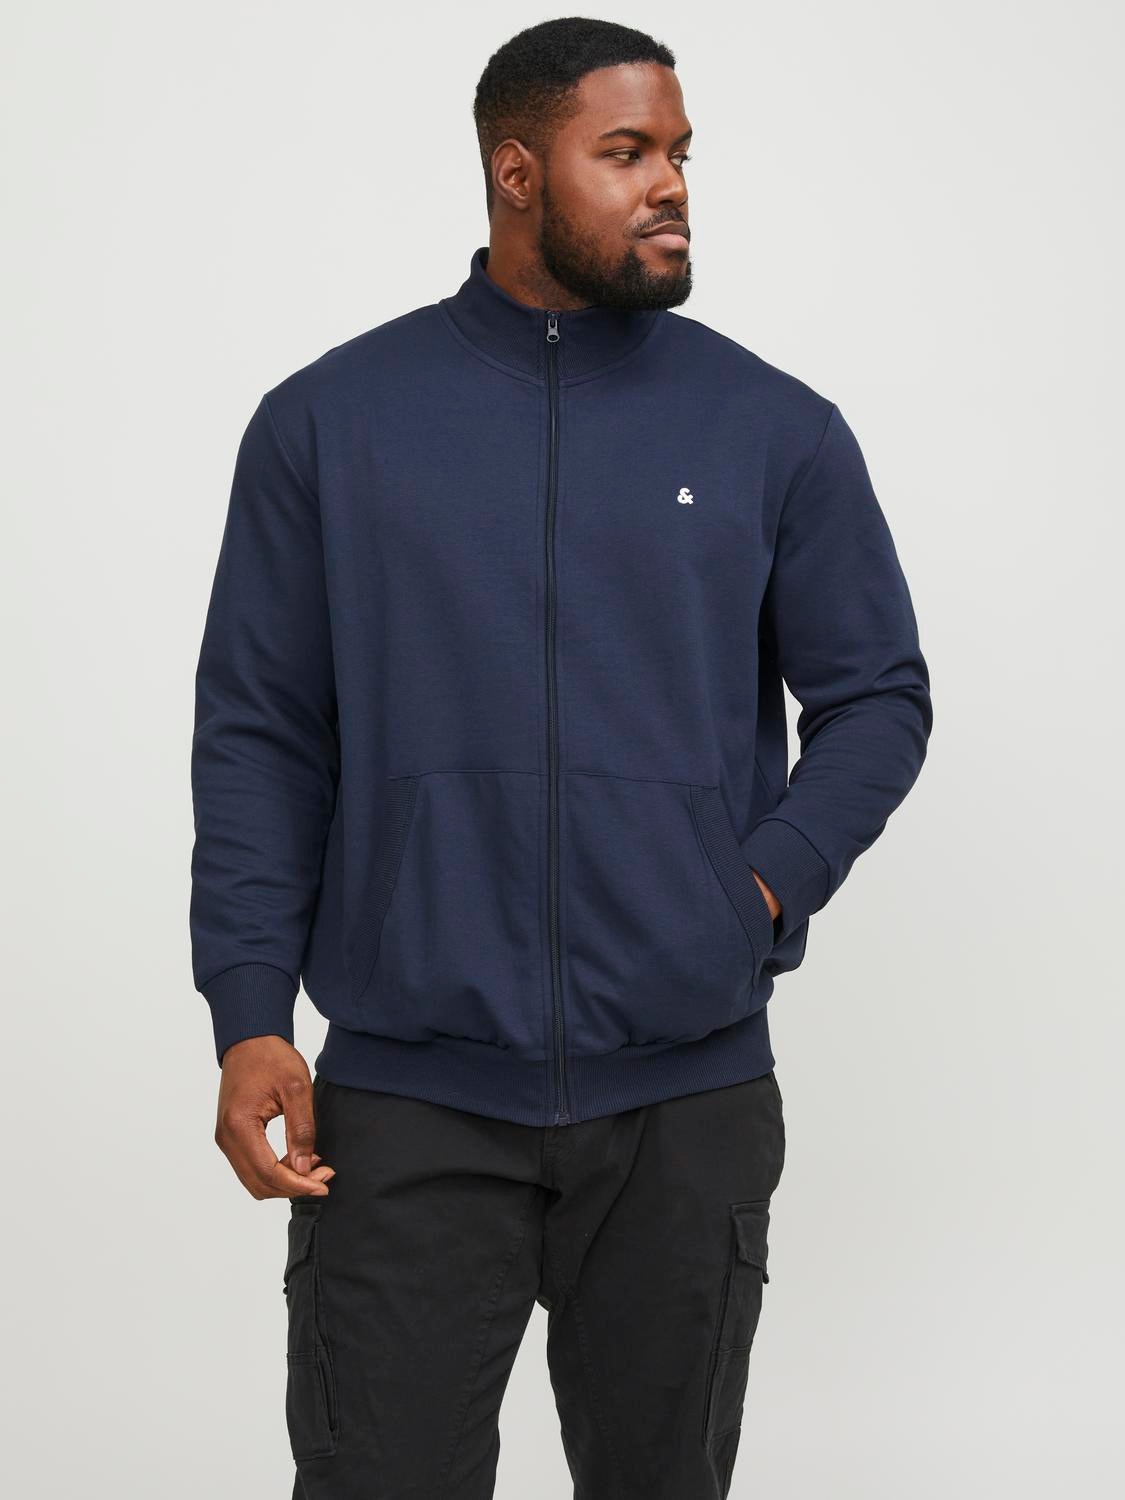 Jack & Jones Plus Size Plain Zip Sweatshirt -Navy Blazer - 12253745